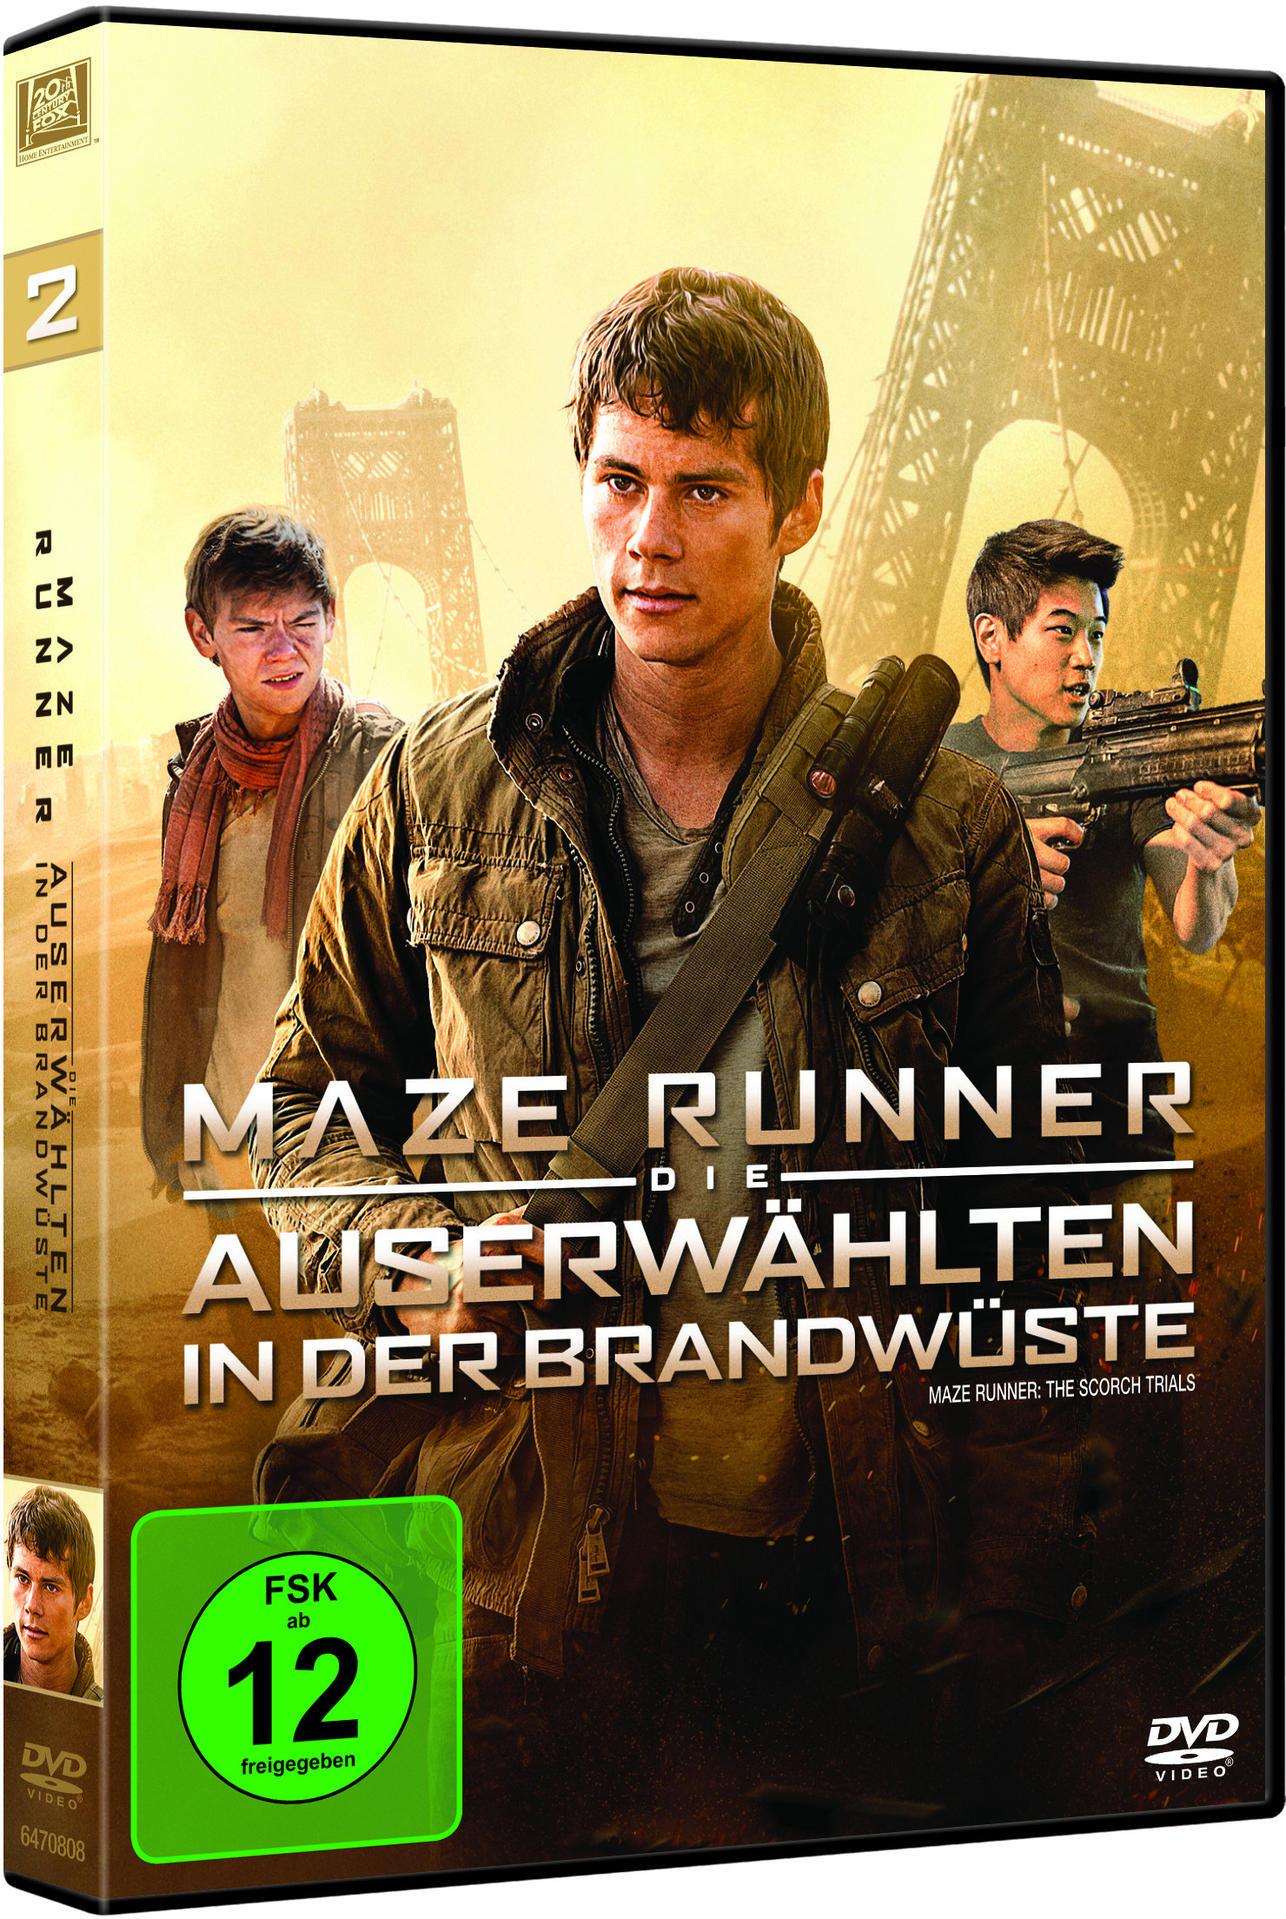 2 - Auserwählten Brandwüste in DVD Runner Maze Die der